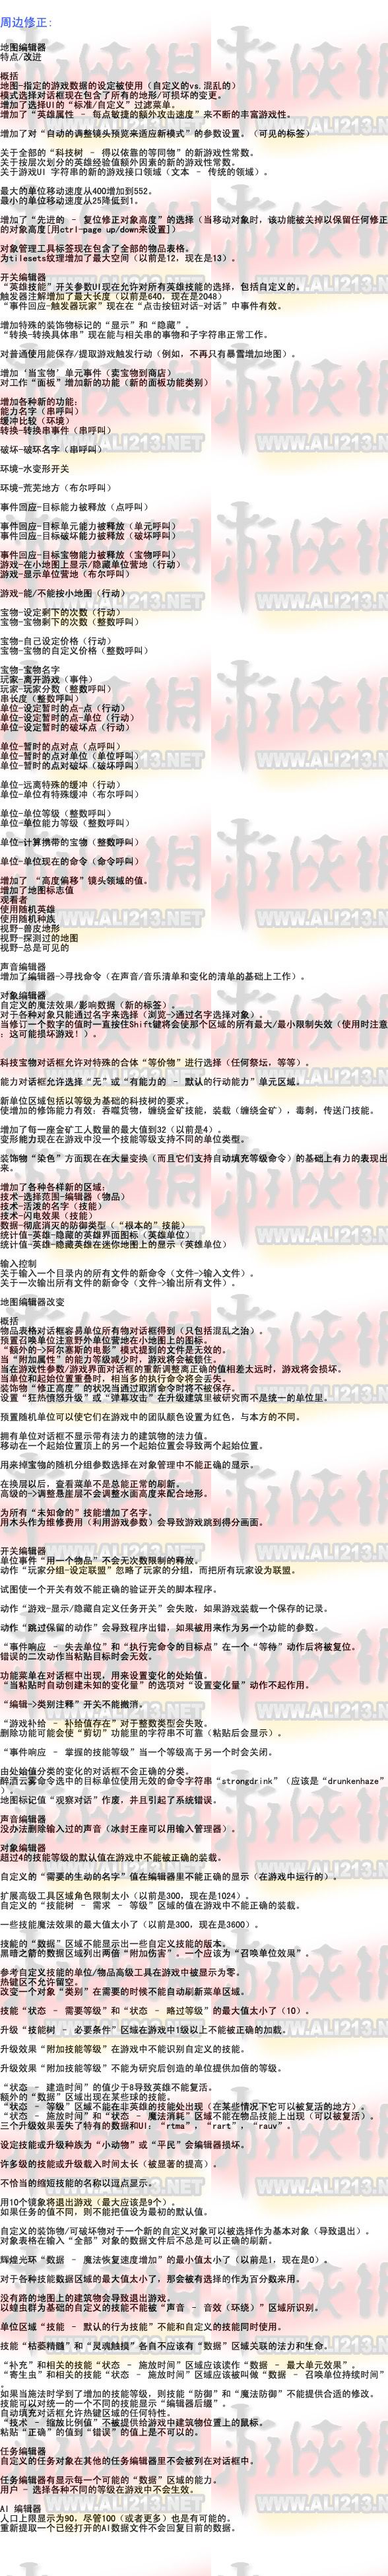 《魔兽争霸3混乱之治》V1.13升级档中文图文说明